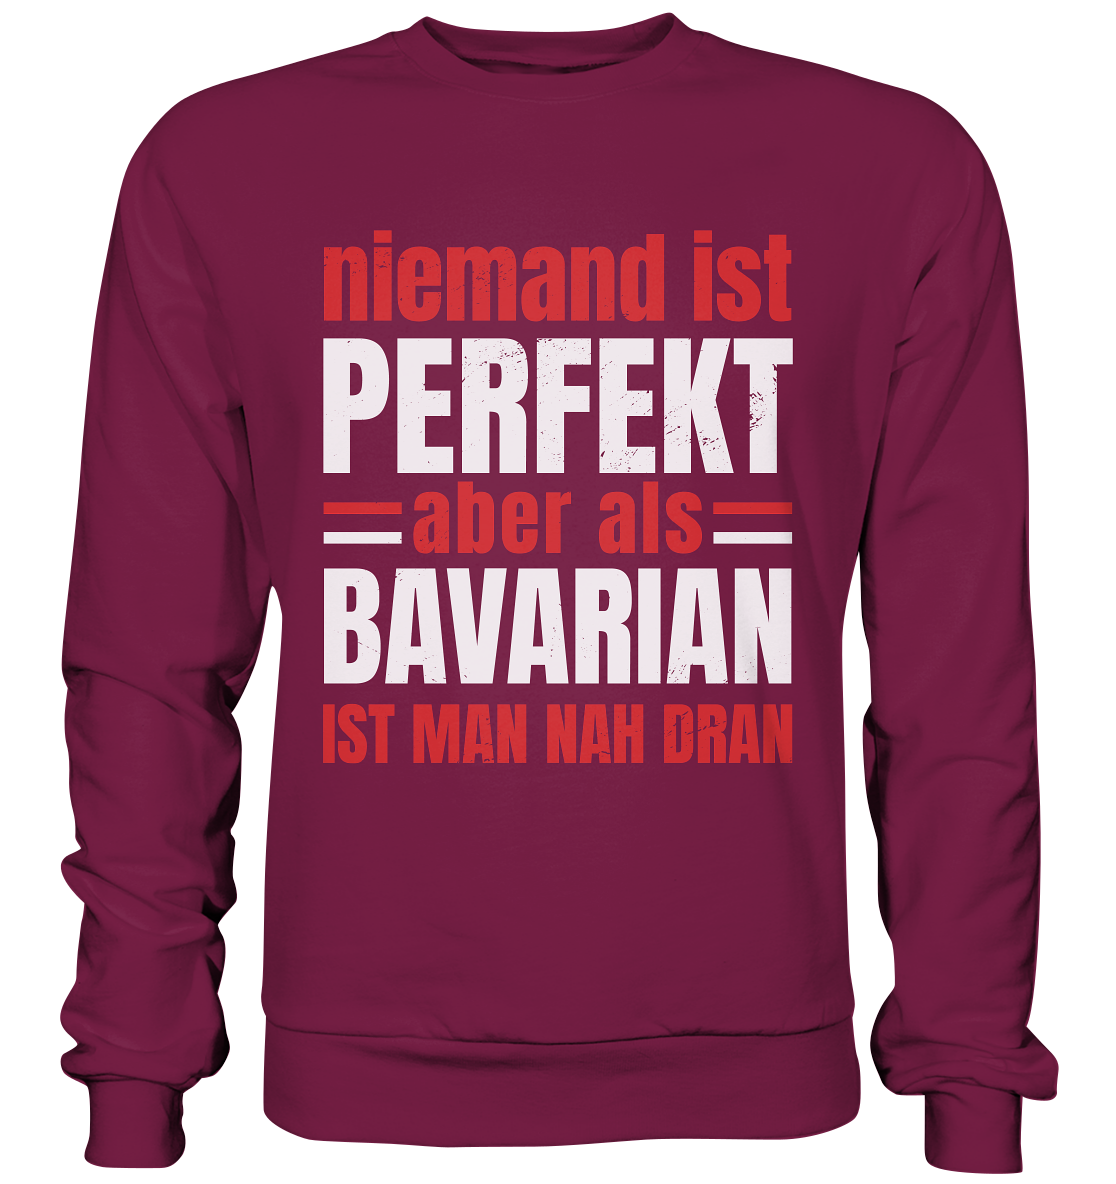 Personne n'est parfait, mais en tant que Bavarois, vous en êtes proche - sweat-shirt basique